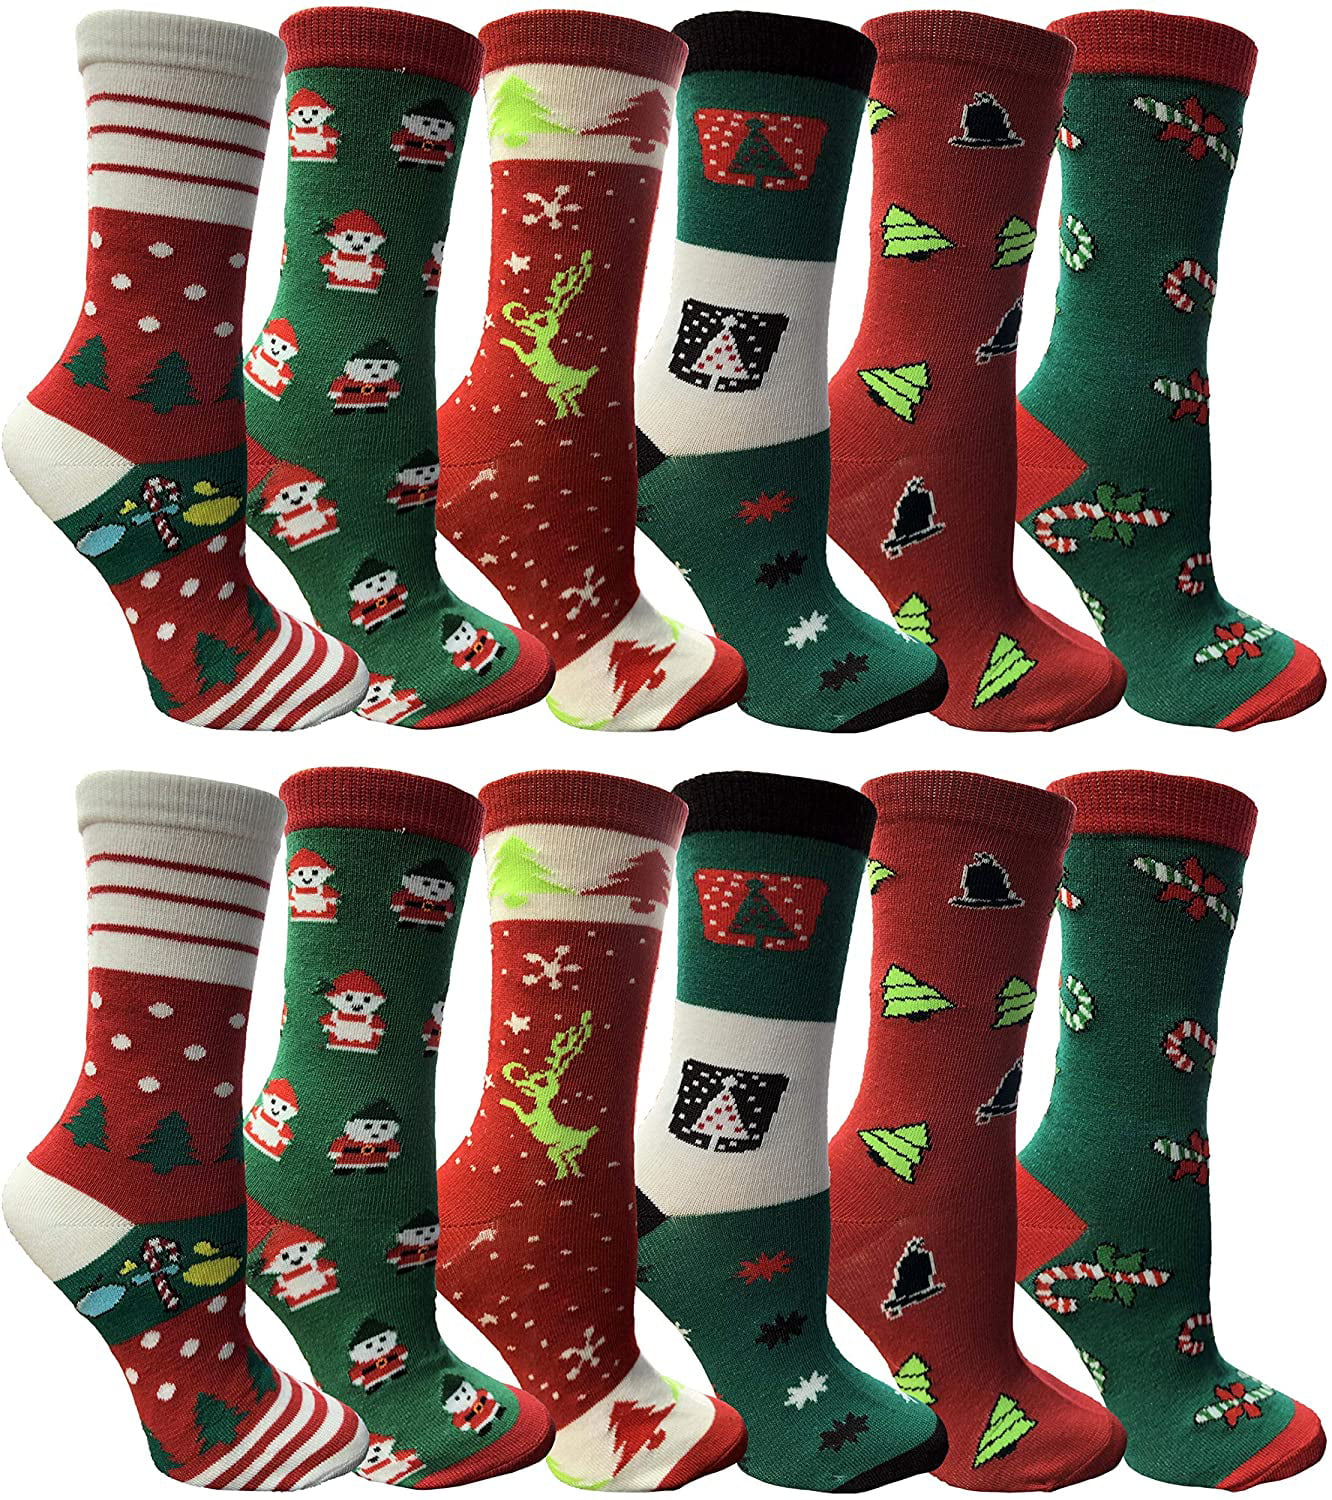 Children’s Socks Ugly Christmas Sweater Pattern Socks Christmas Mid Socks Plush Women’s Socks Novelty Socks Merry Christmas Gift